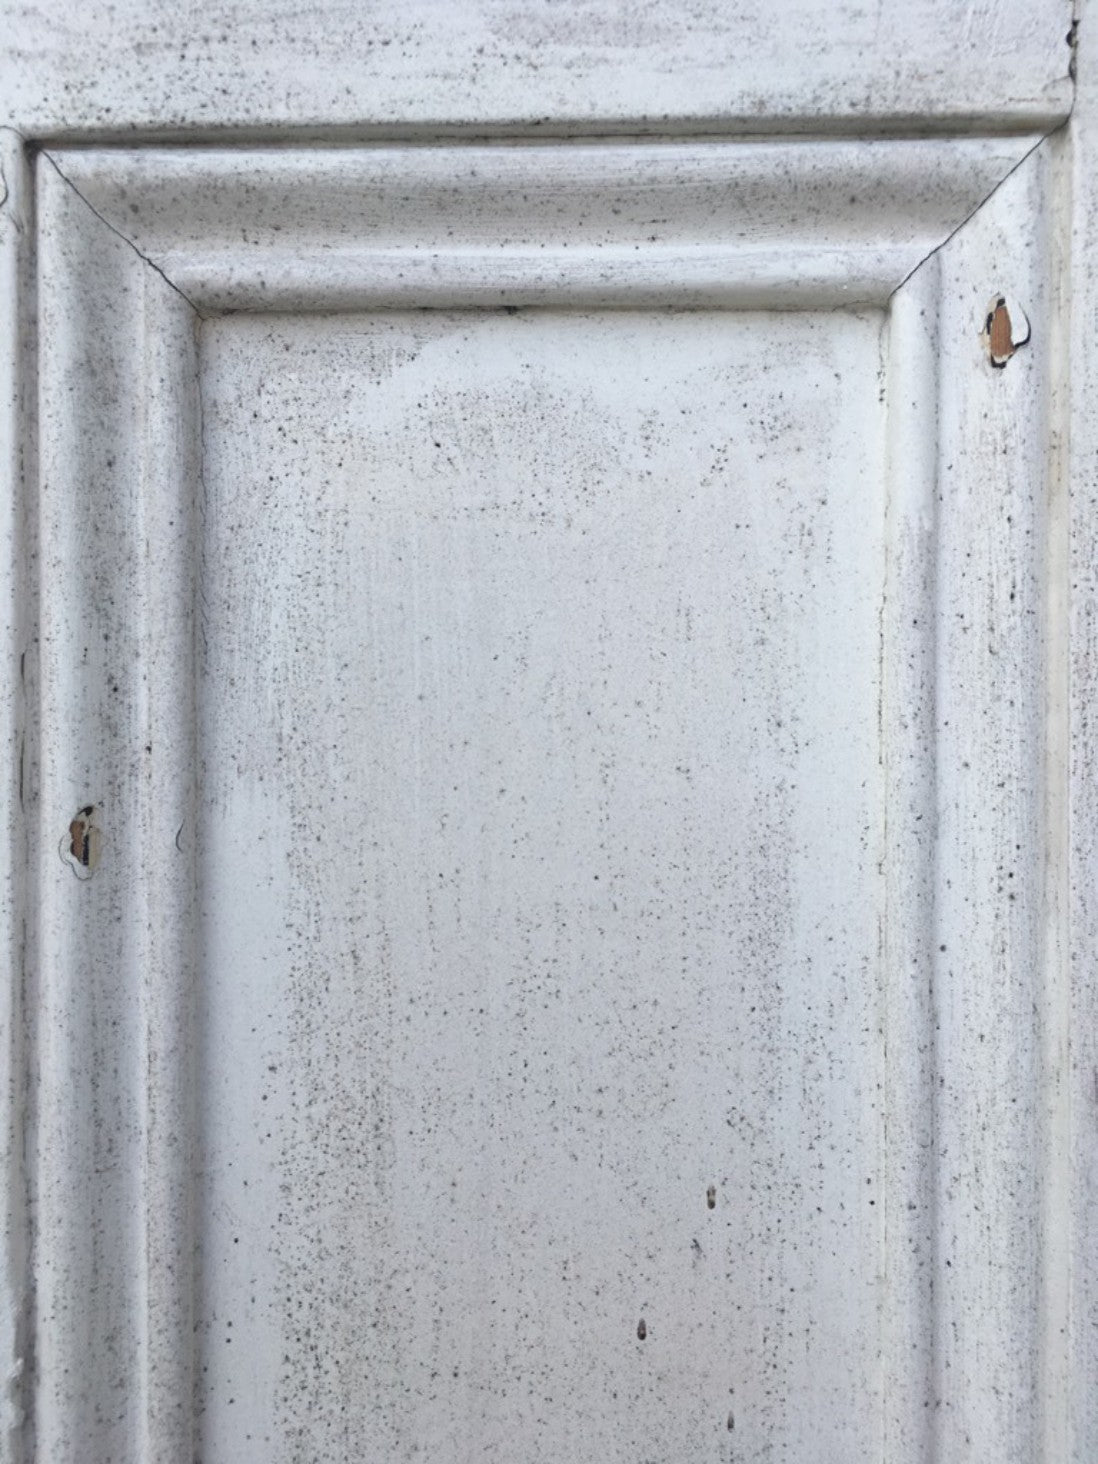 29“x73” Reclaimed Old Victorian Beaded 4 Panel Painted Pine Door